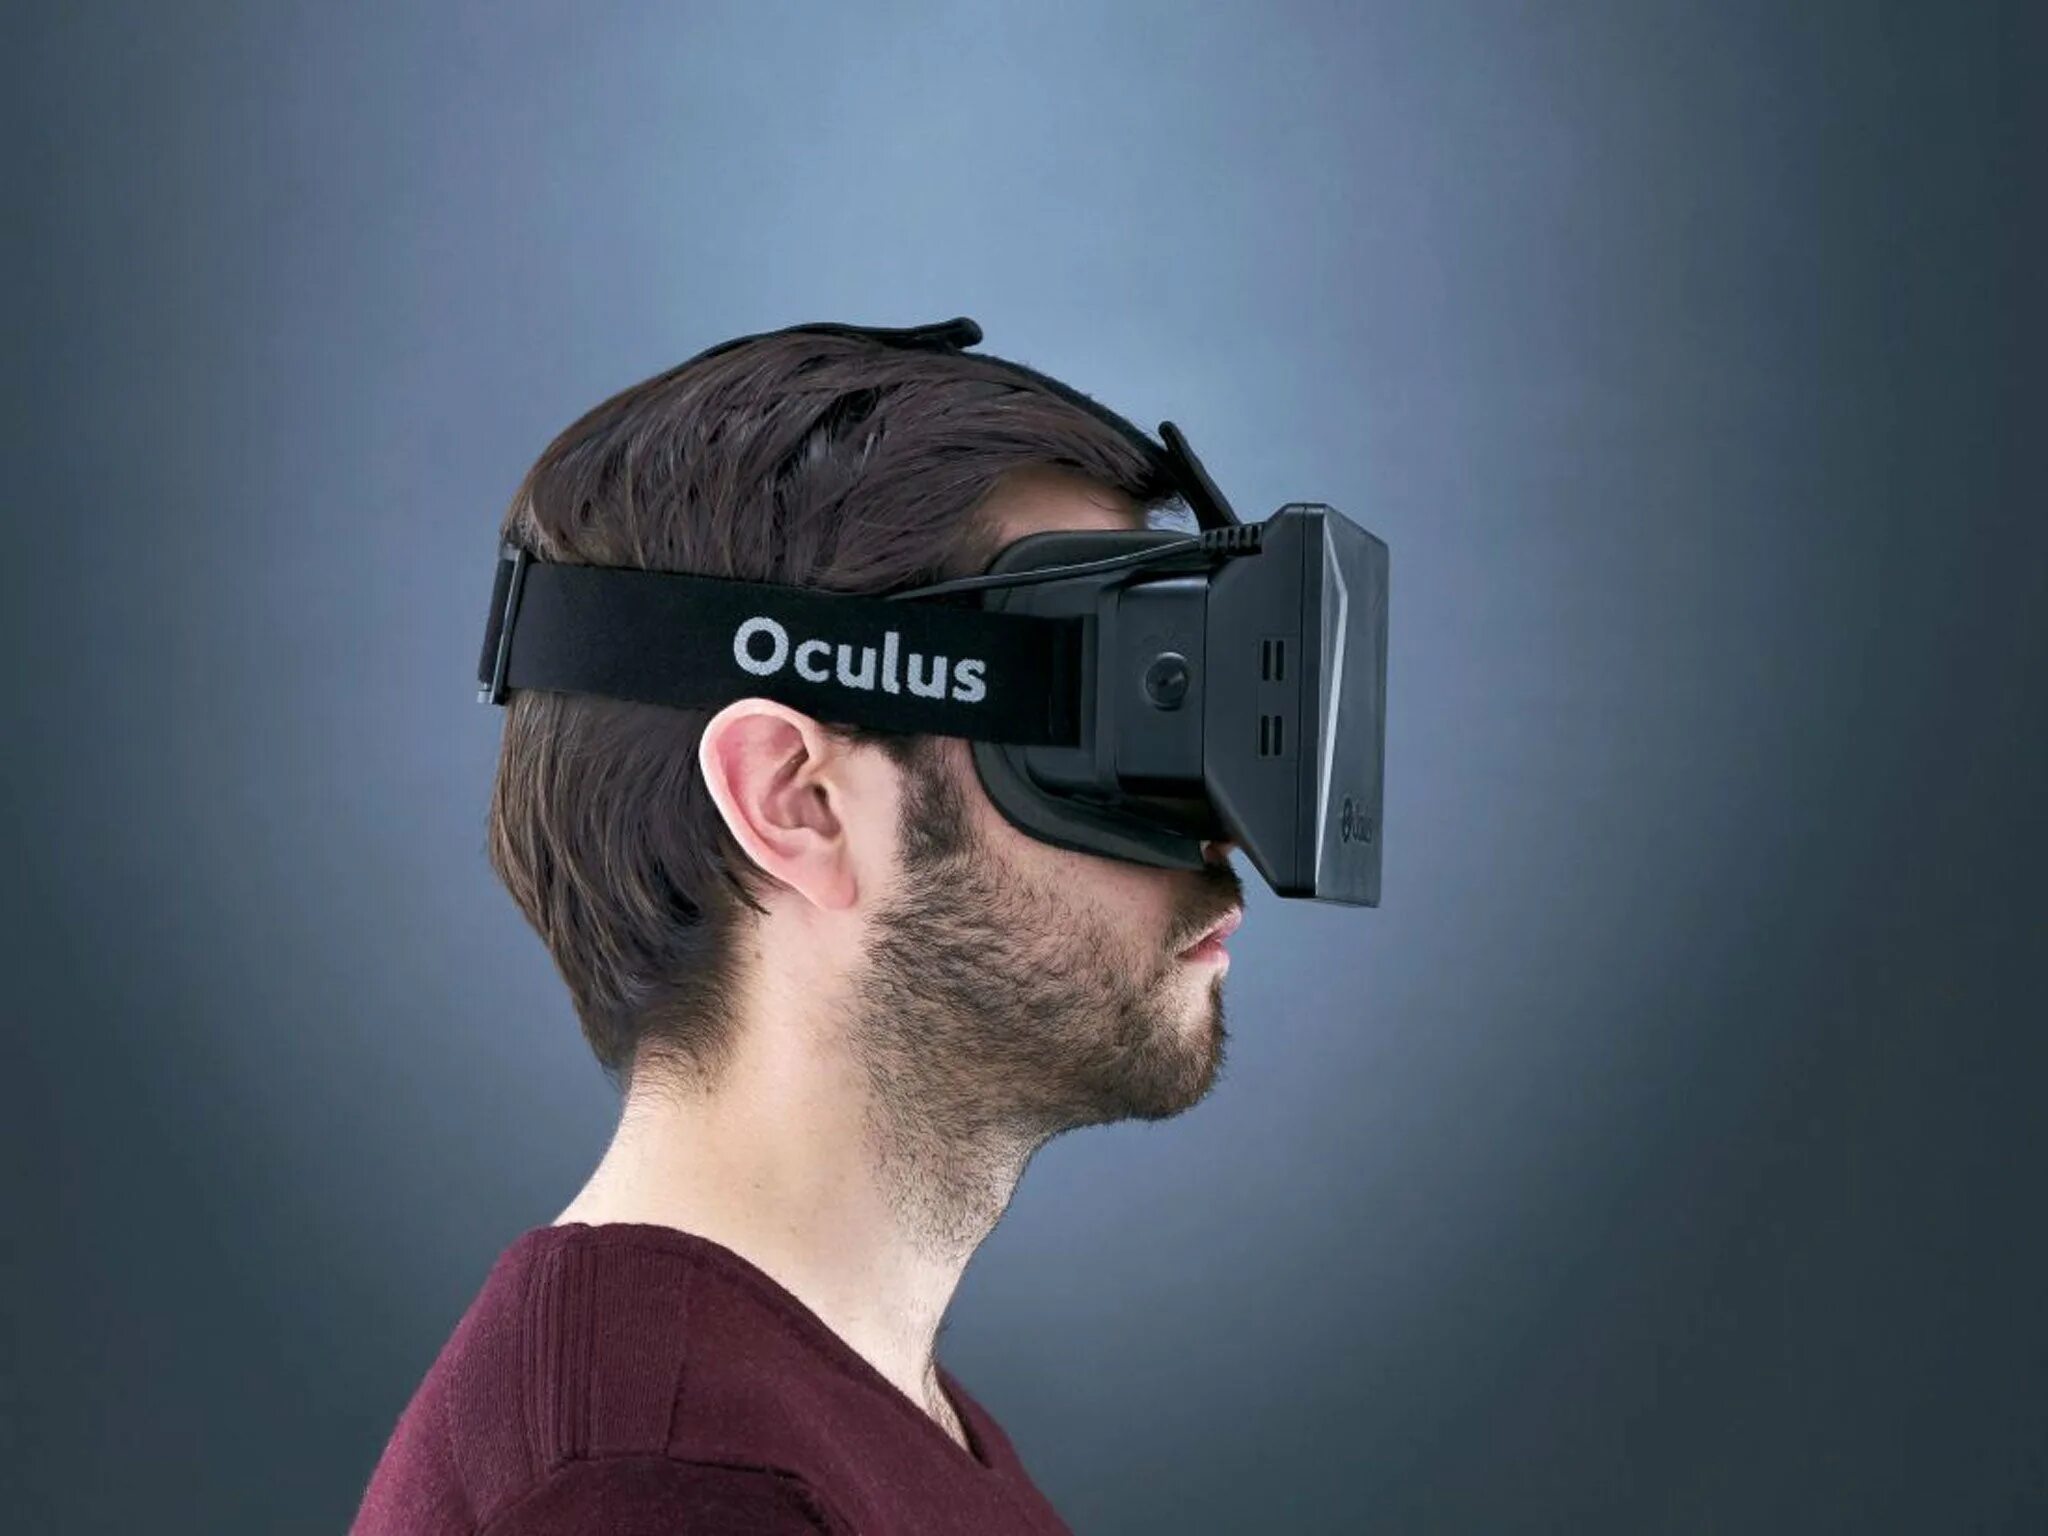 Compilations vr. Шлем Oculus Rift. ВР очки Окулус. VR шлем Oculus. Очки виртуальной реальности Oculus Rift.